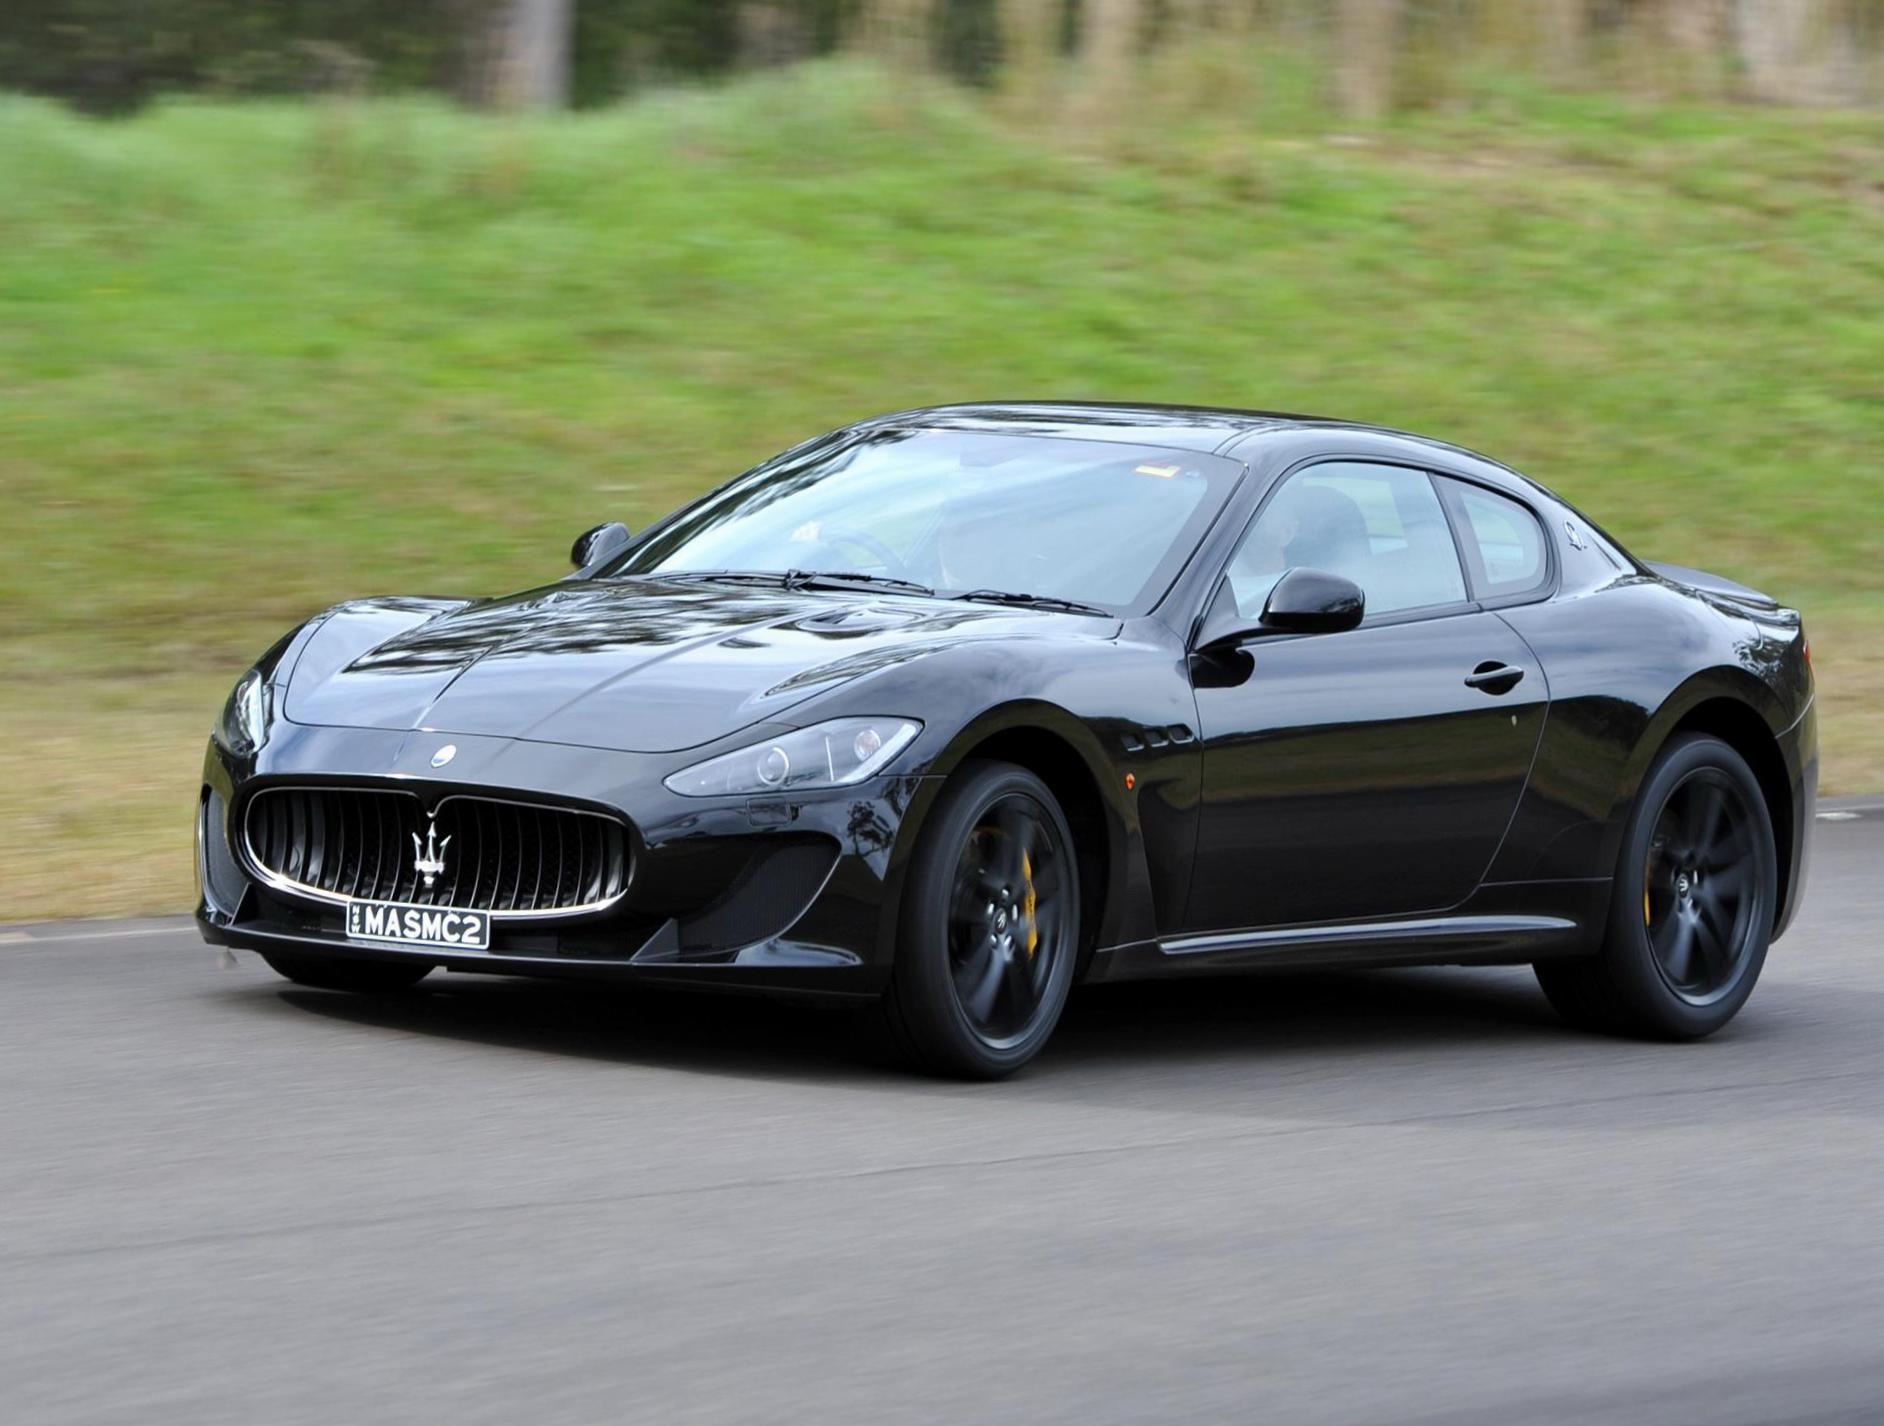 GranTurismo MC Stradale Maserati auto suv